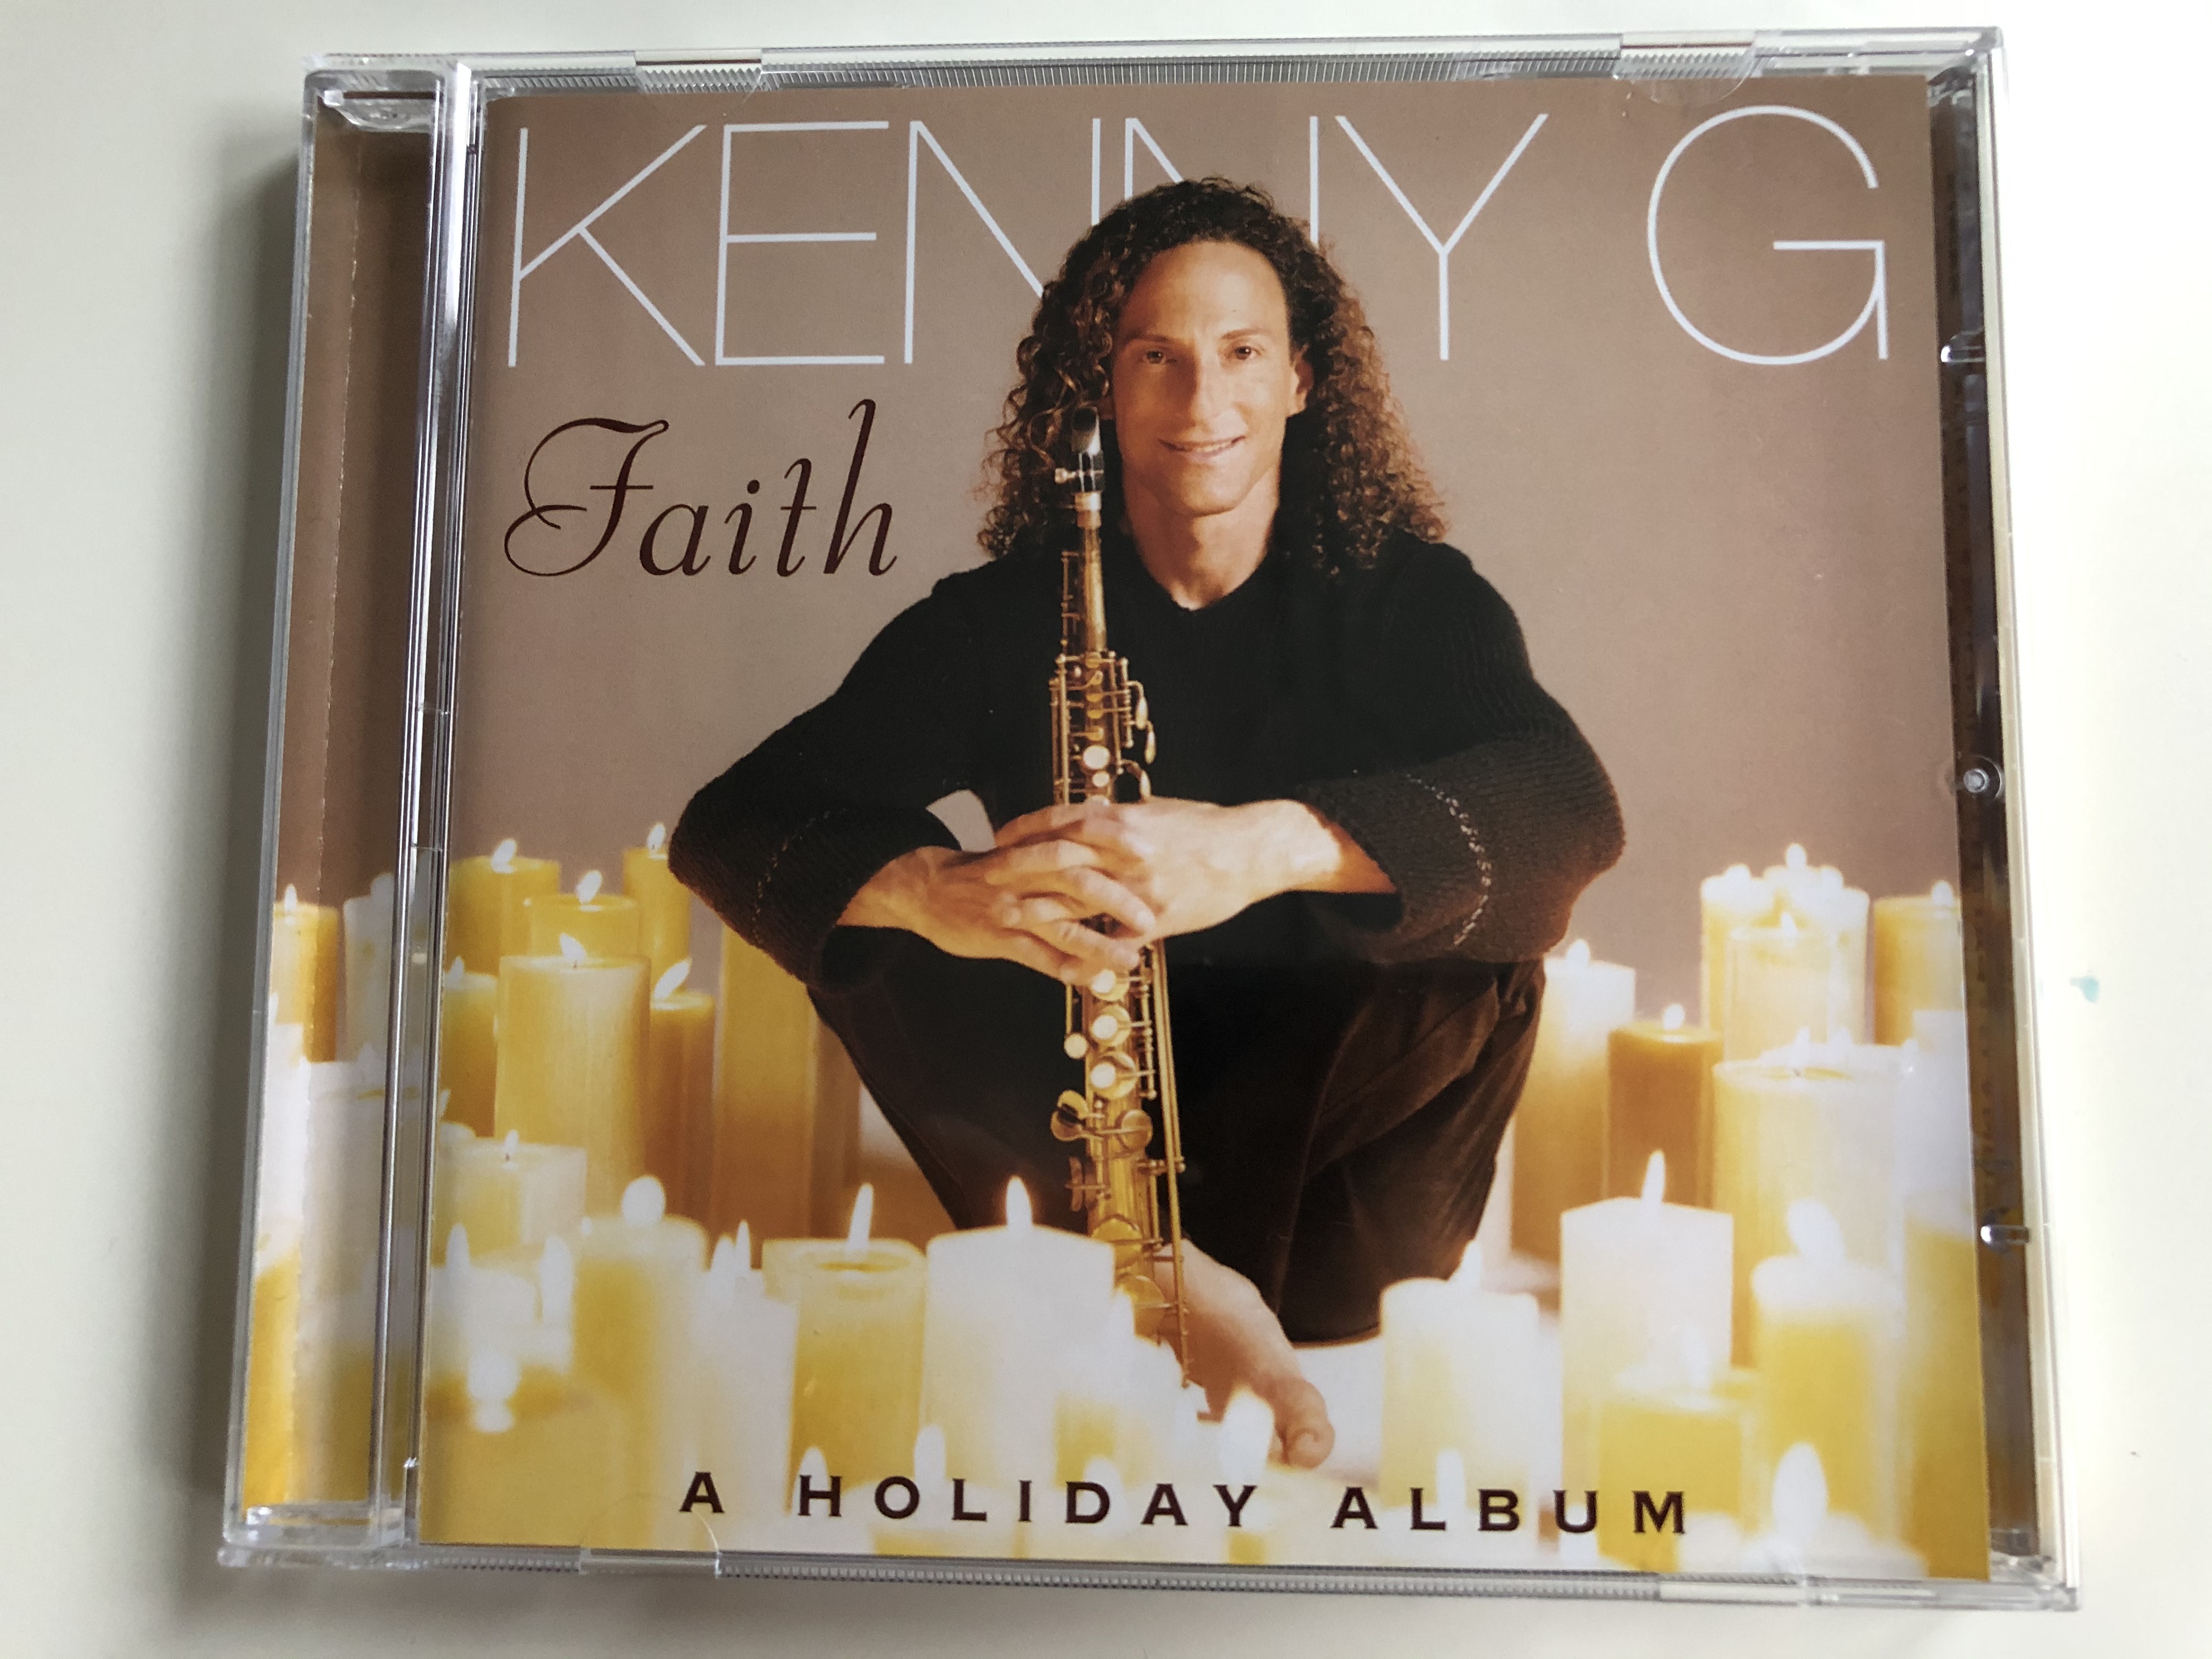 kenny-g-faith-a-holiday-album-arista-audio-cd-2004-82876-648462-1-.jpg